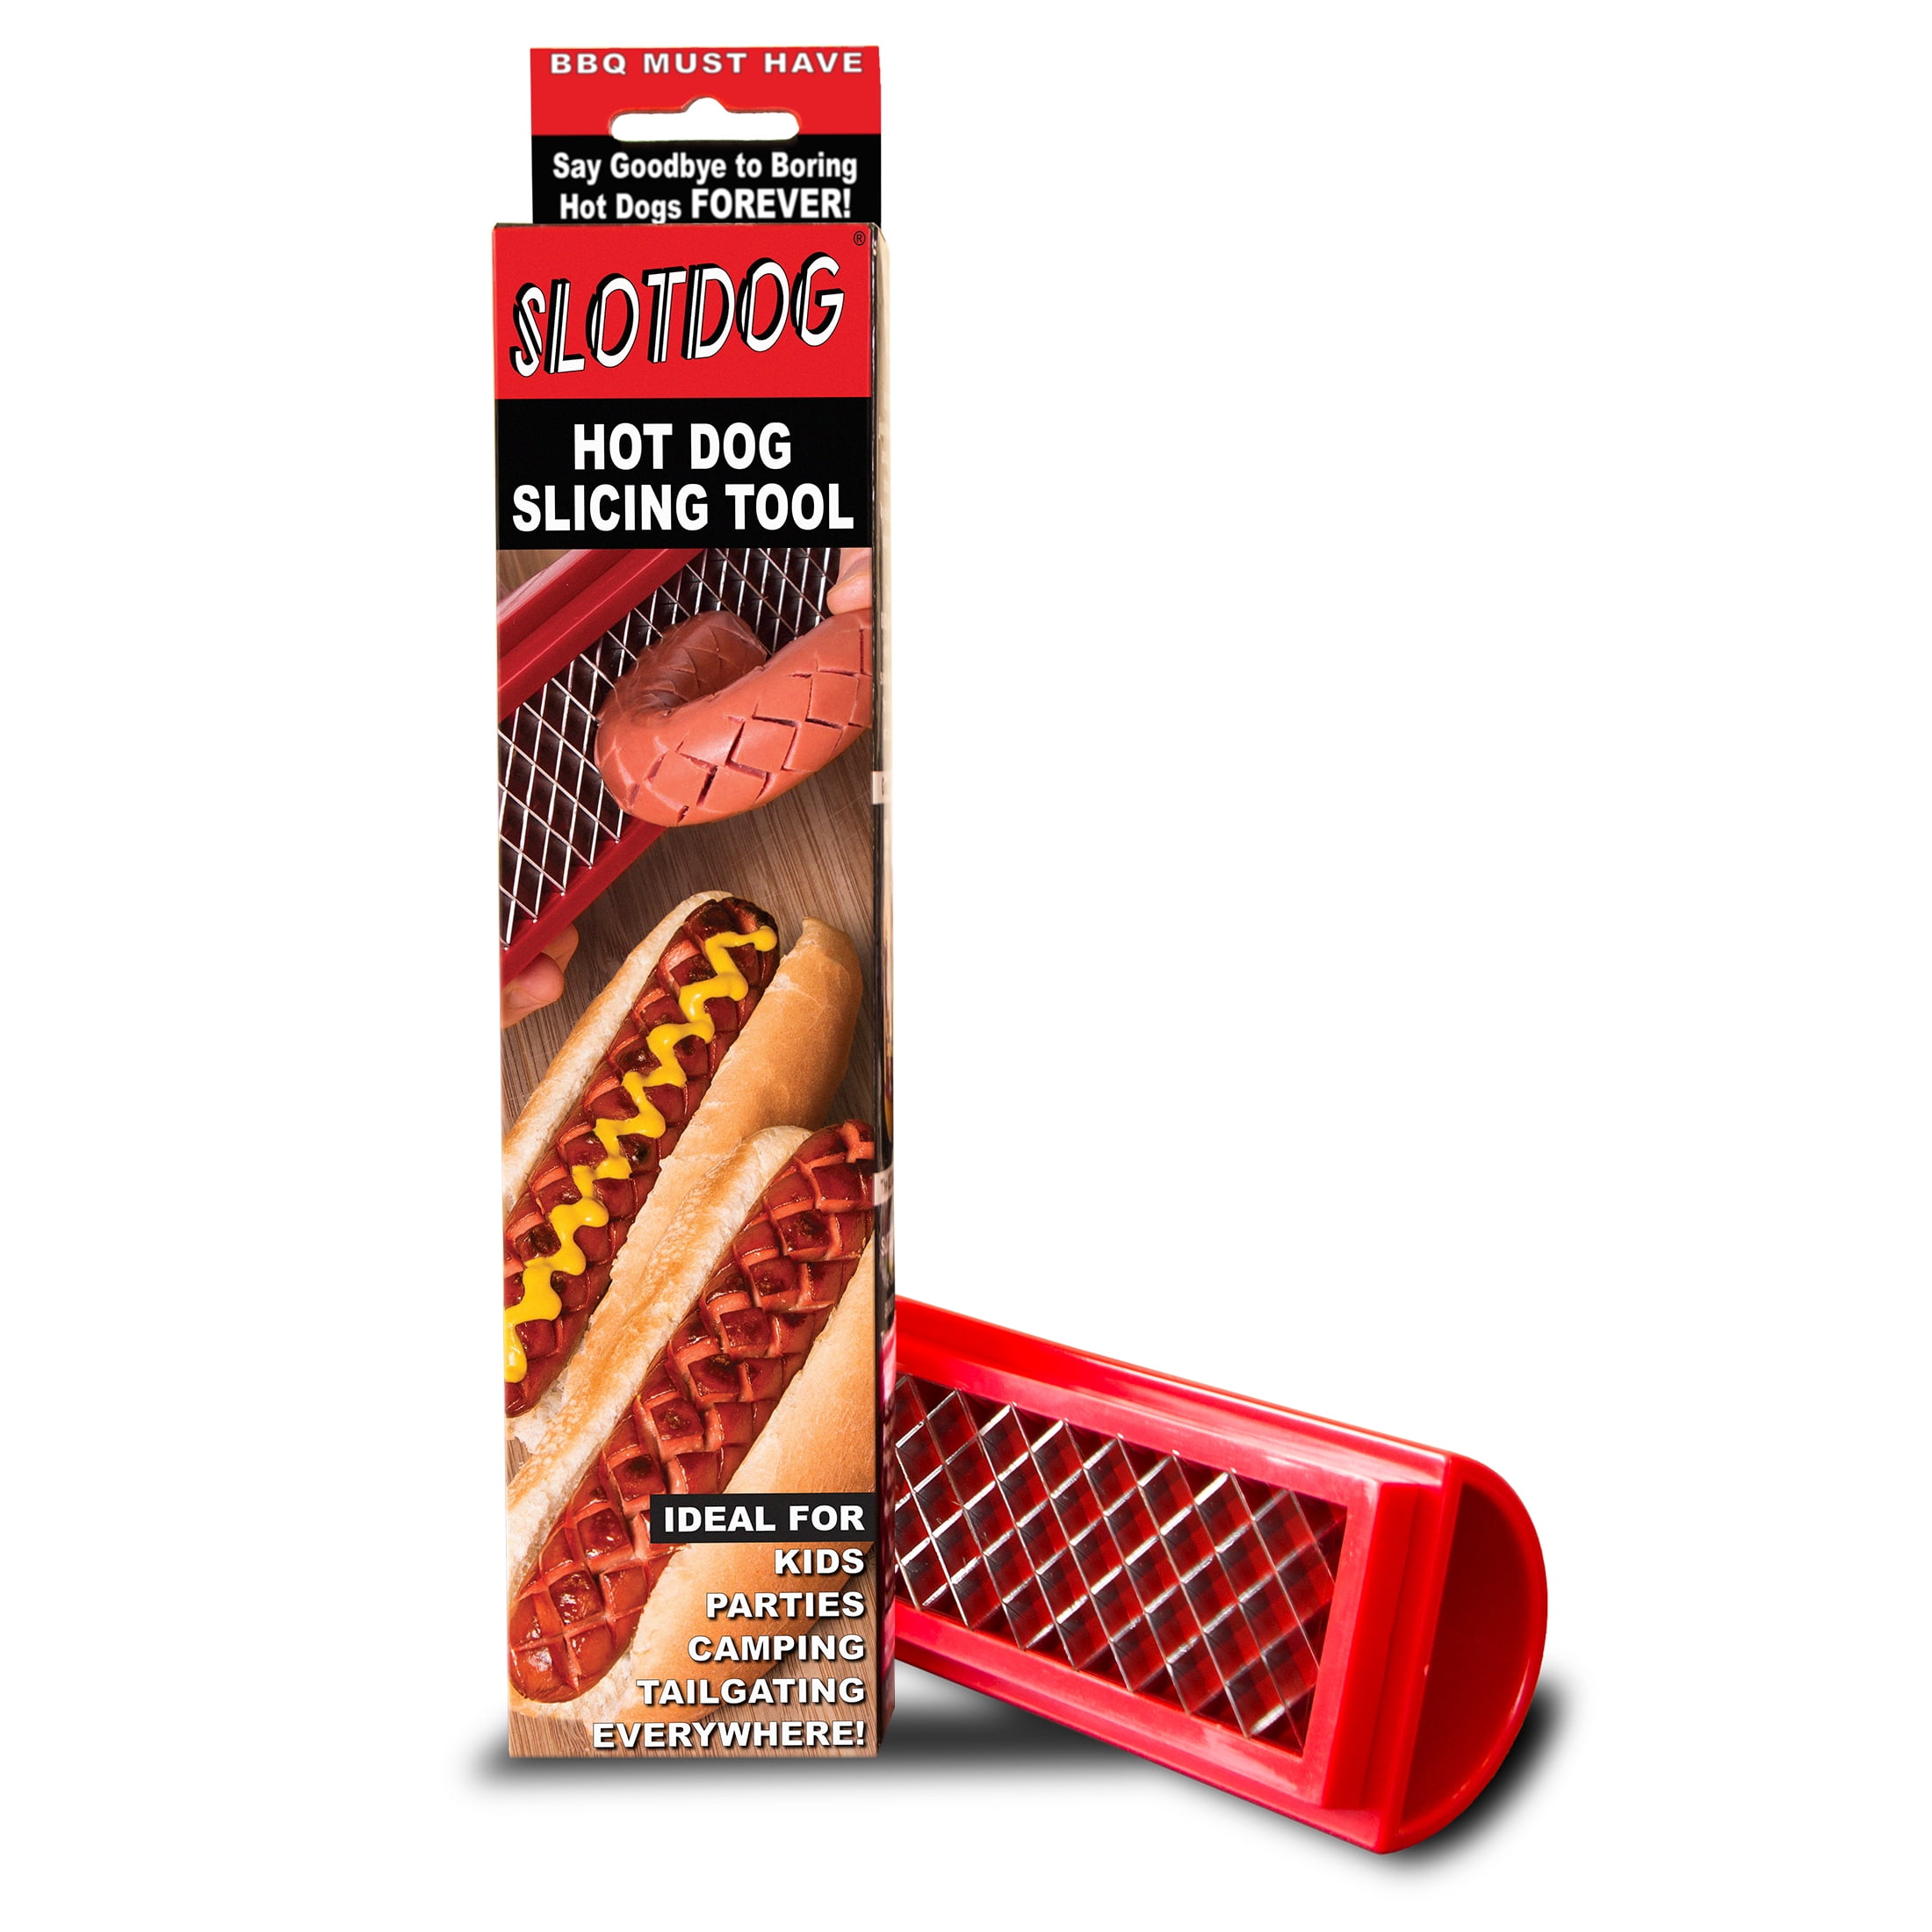 Hot dog slicer : r/DidntKnowIWantedThat